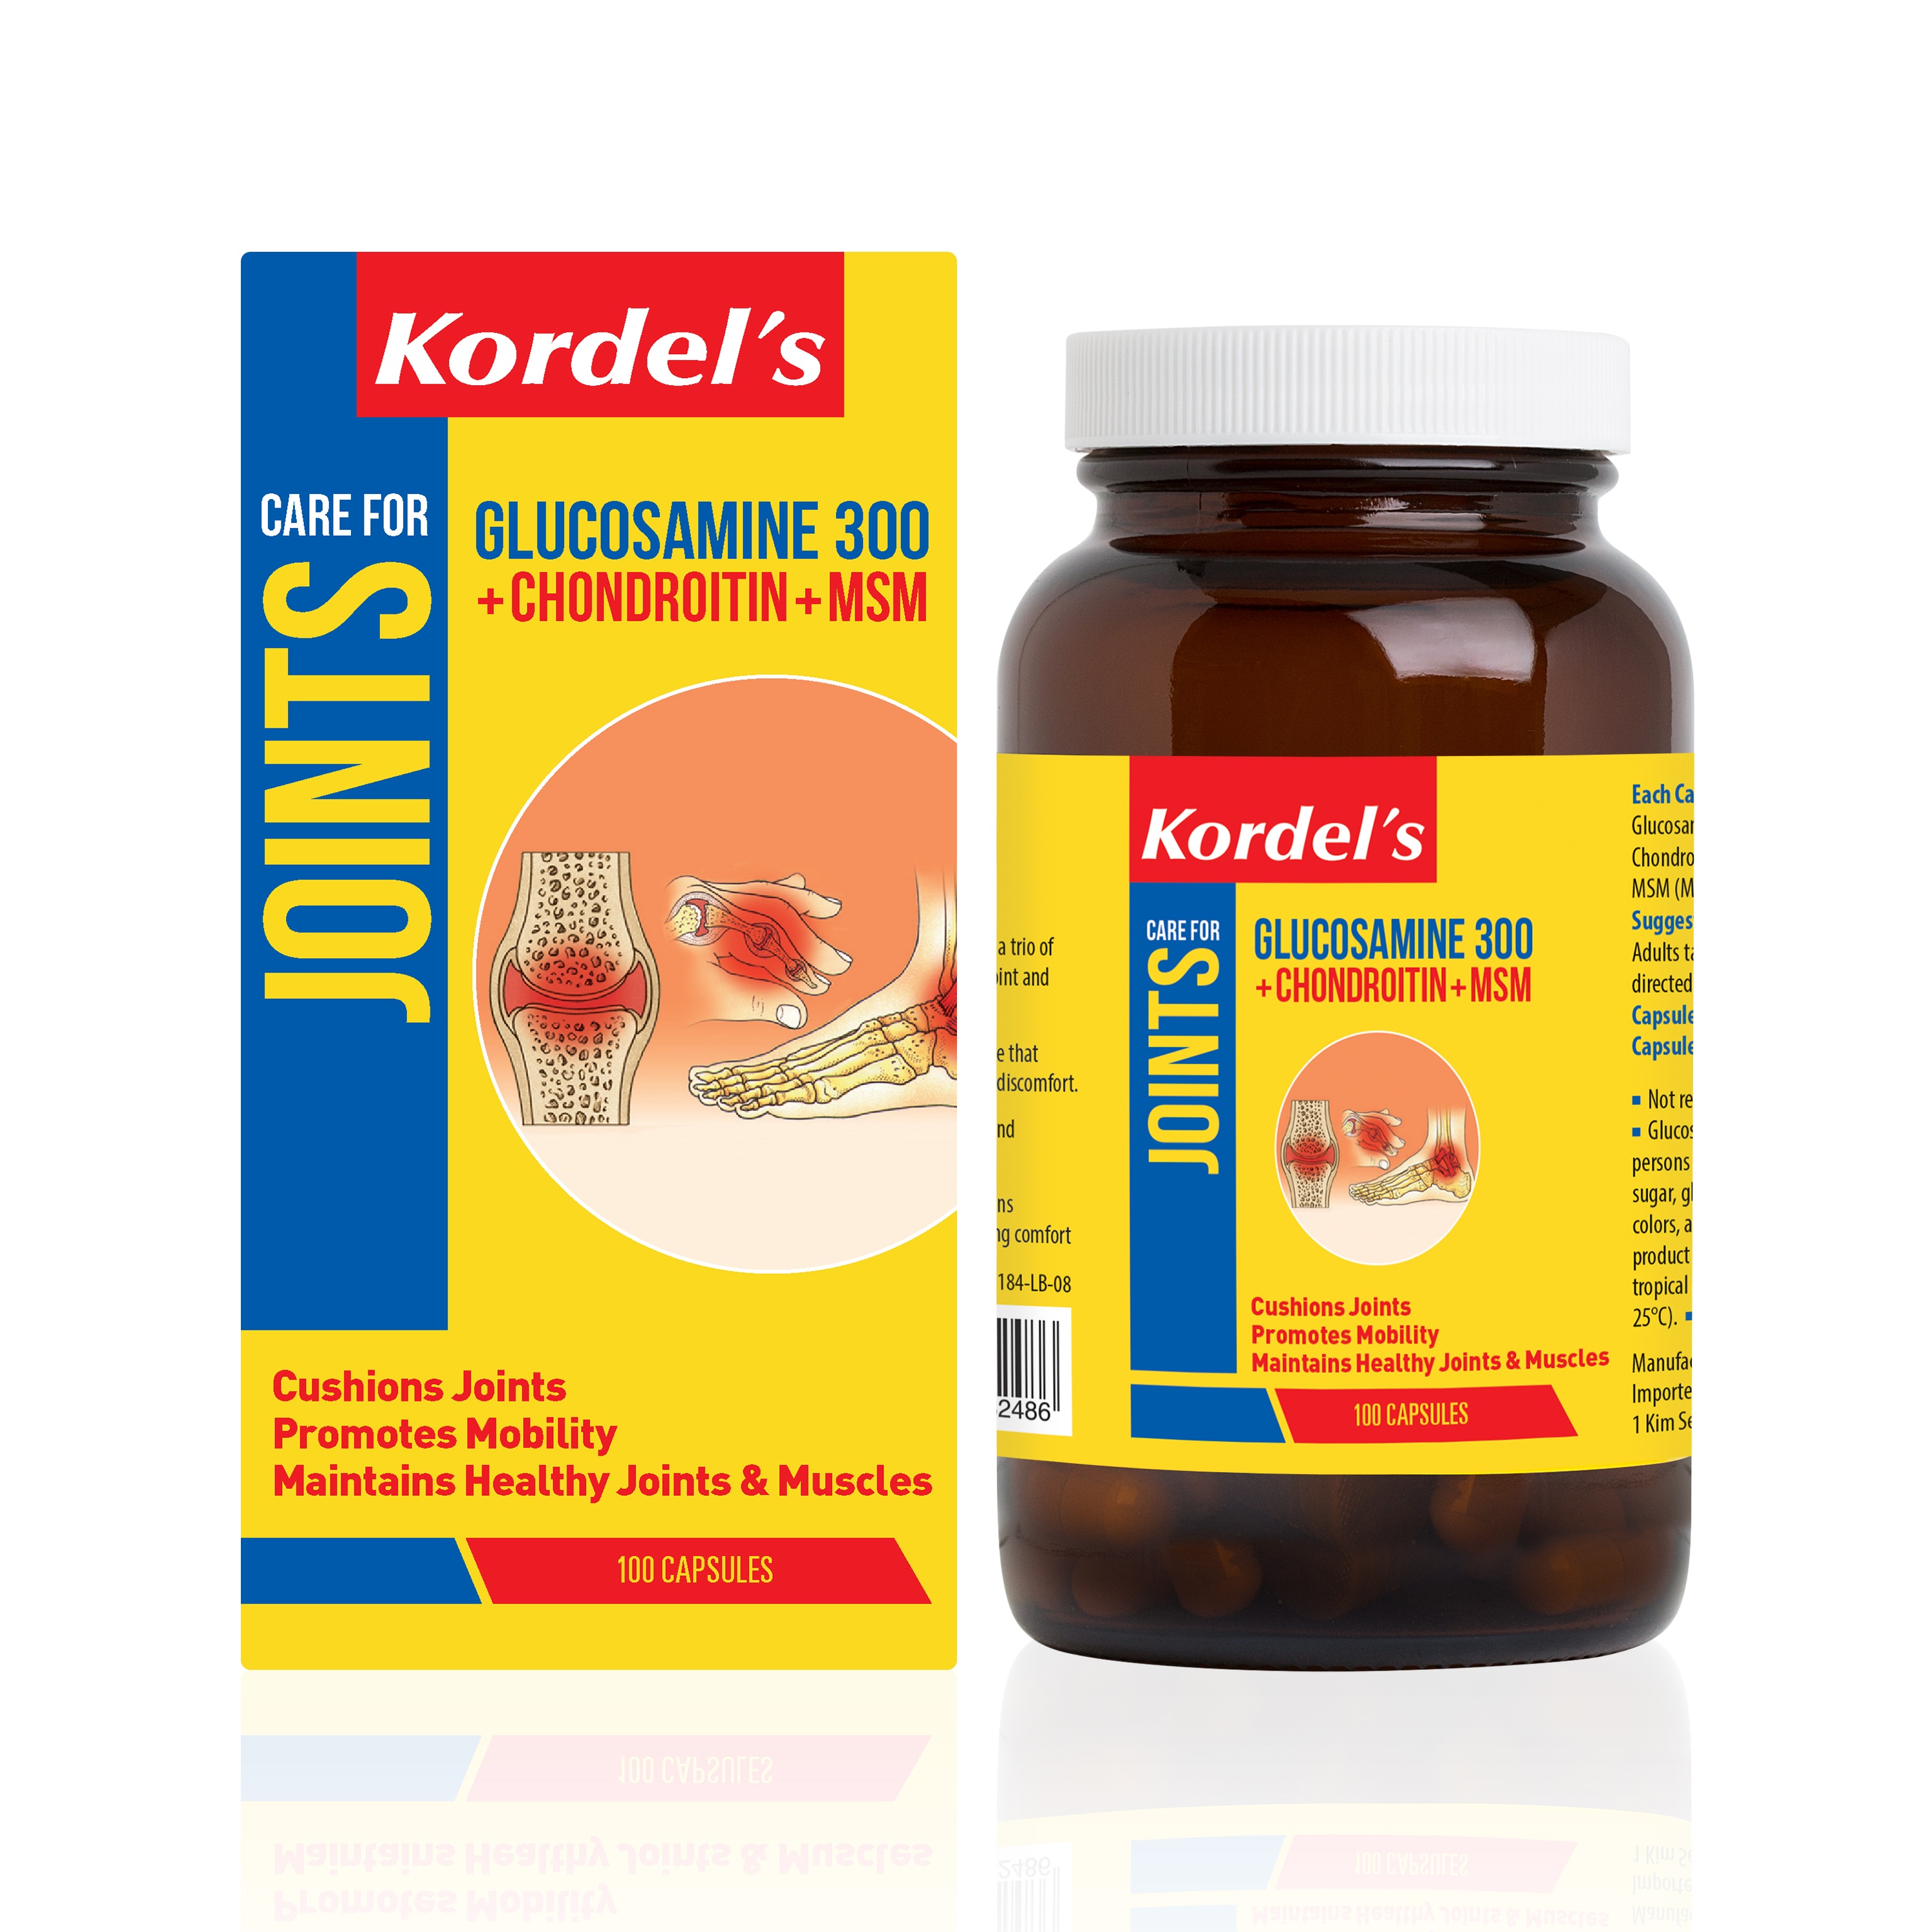 Kordel's Glucosamine 300 + Chondroitin + MSM 100 Capsules